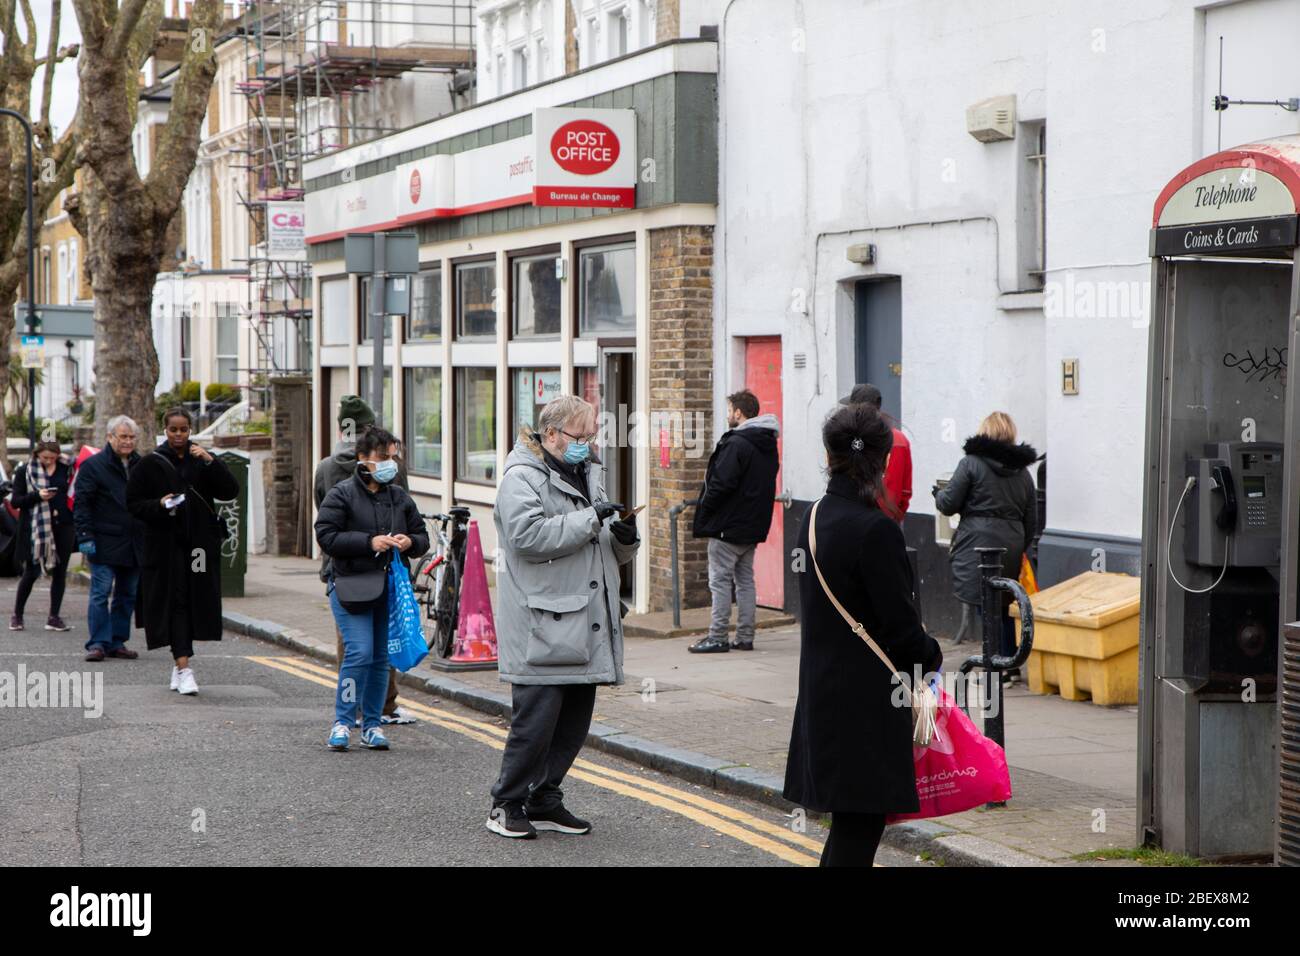 Kilburn, Londres, Royaume-Uni, 4 avril 2020 une file d'attente à l'extérieur d'un bureau de poste tandis qu'une politique de mise en place de distanciation sociale est en place pendant le virus Covid-19. Banque D'Images